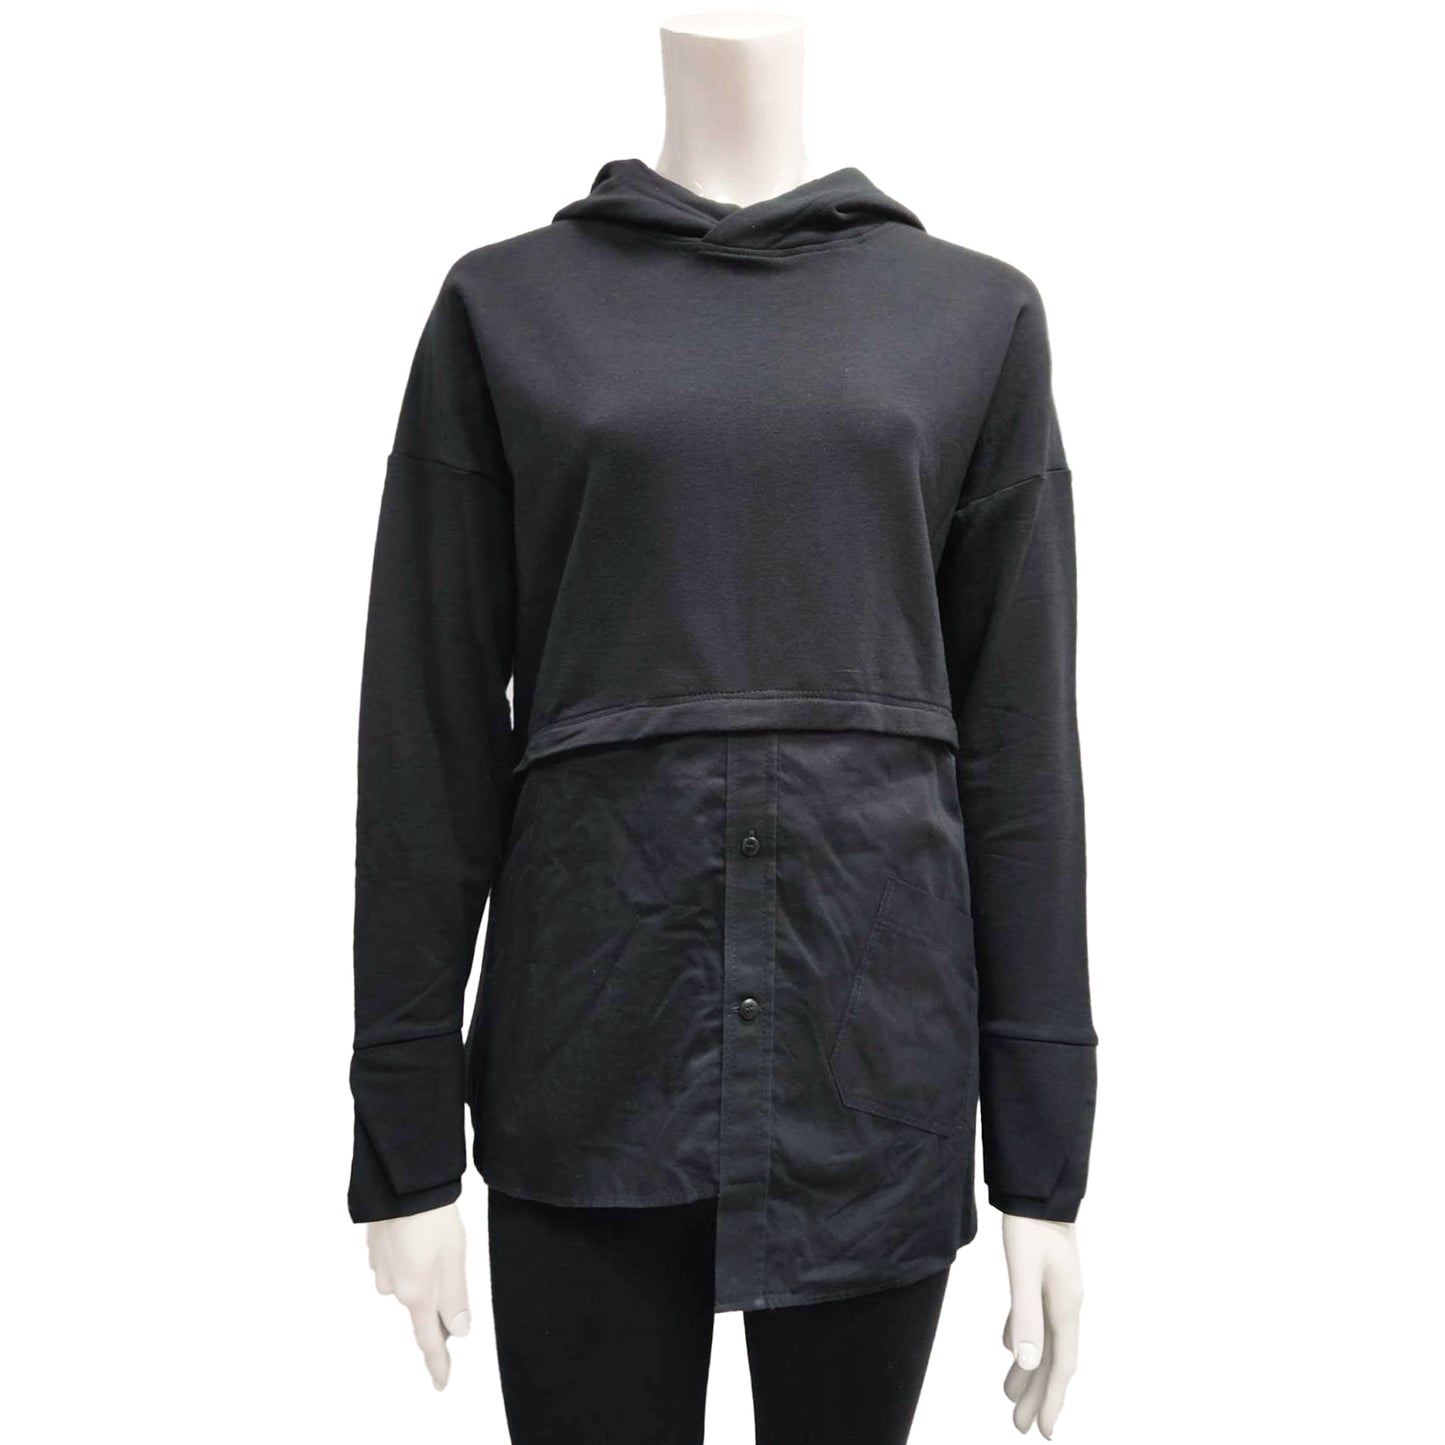 Women's hooded sweatshirt - SYDNEY | Black